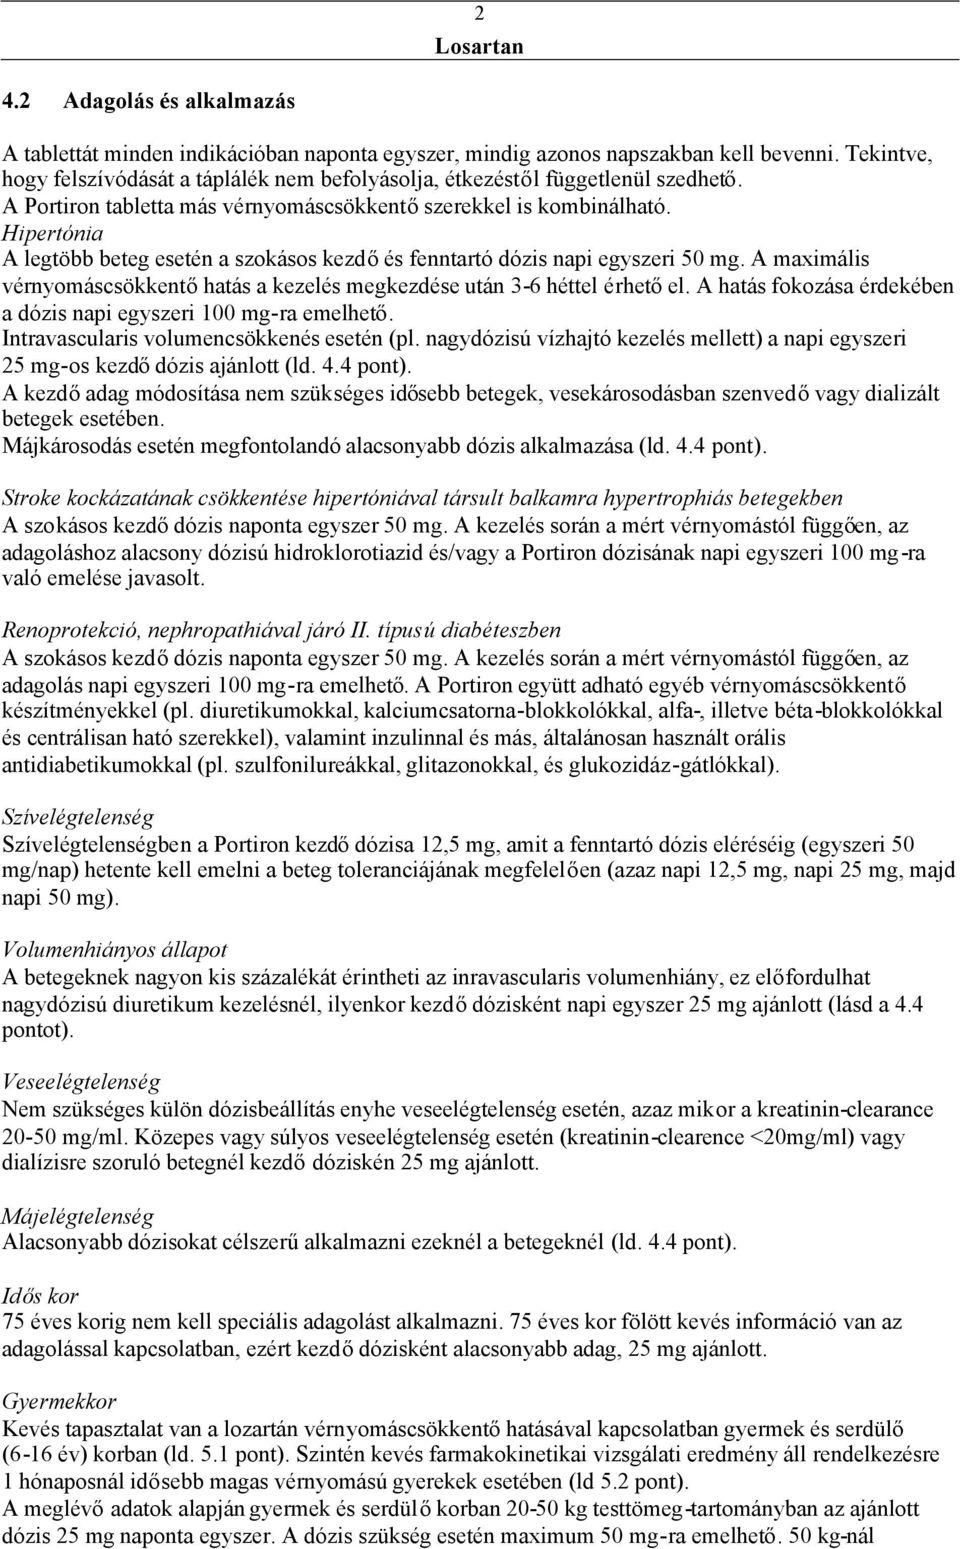 LOSARTAN/HYDROCHLOROTHIAZIDE KRKA mg/25 mg filmtabletta